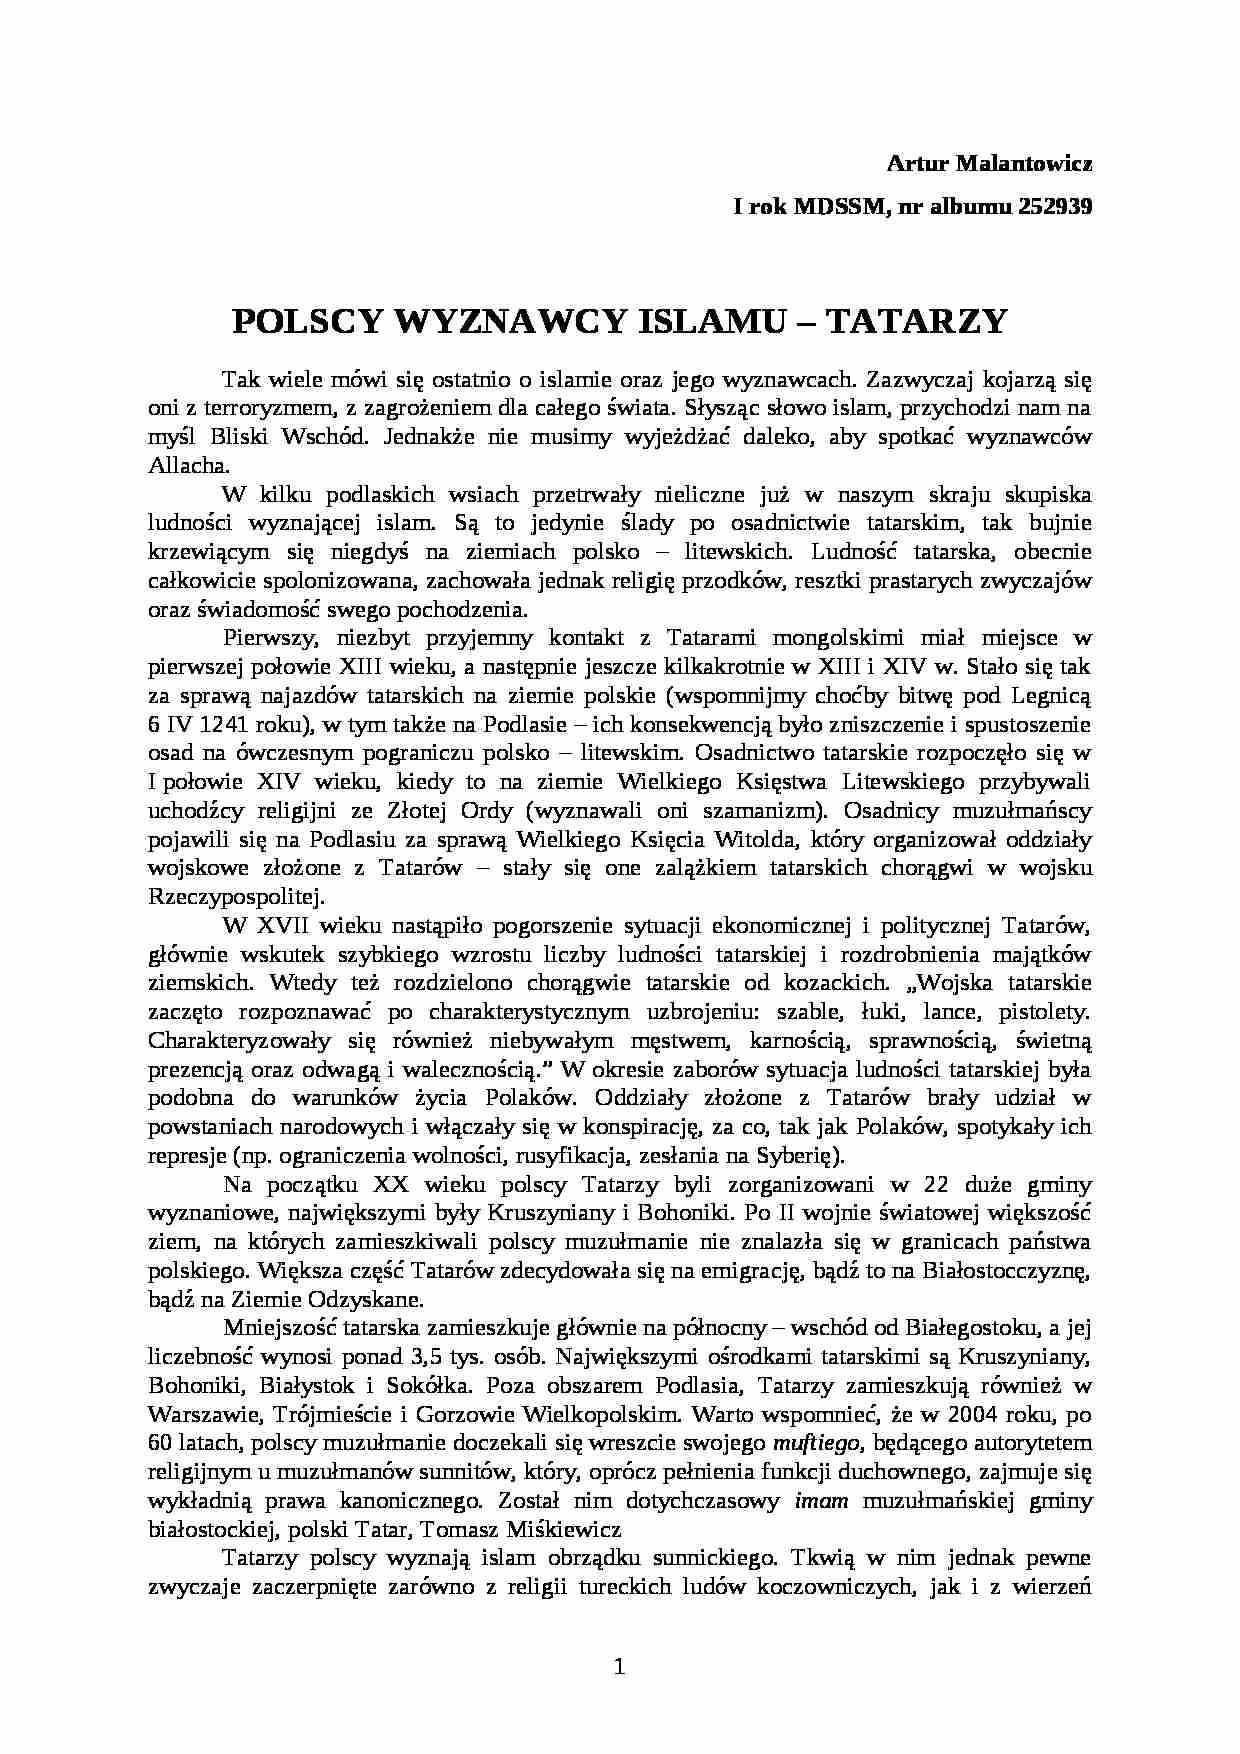 Tatarzy - referat - strona 1